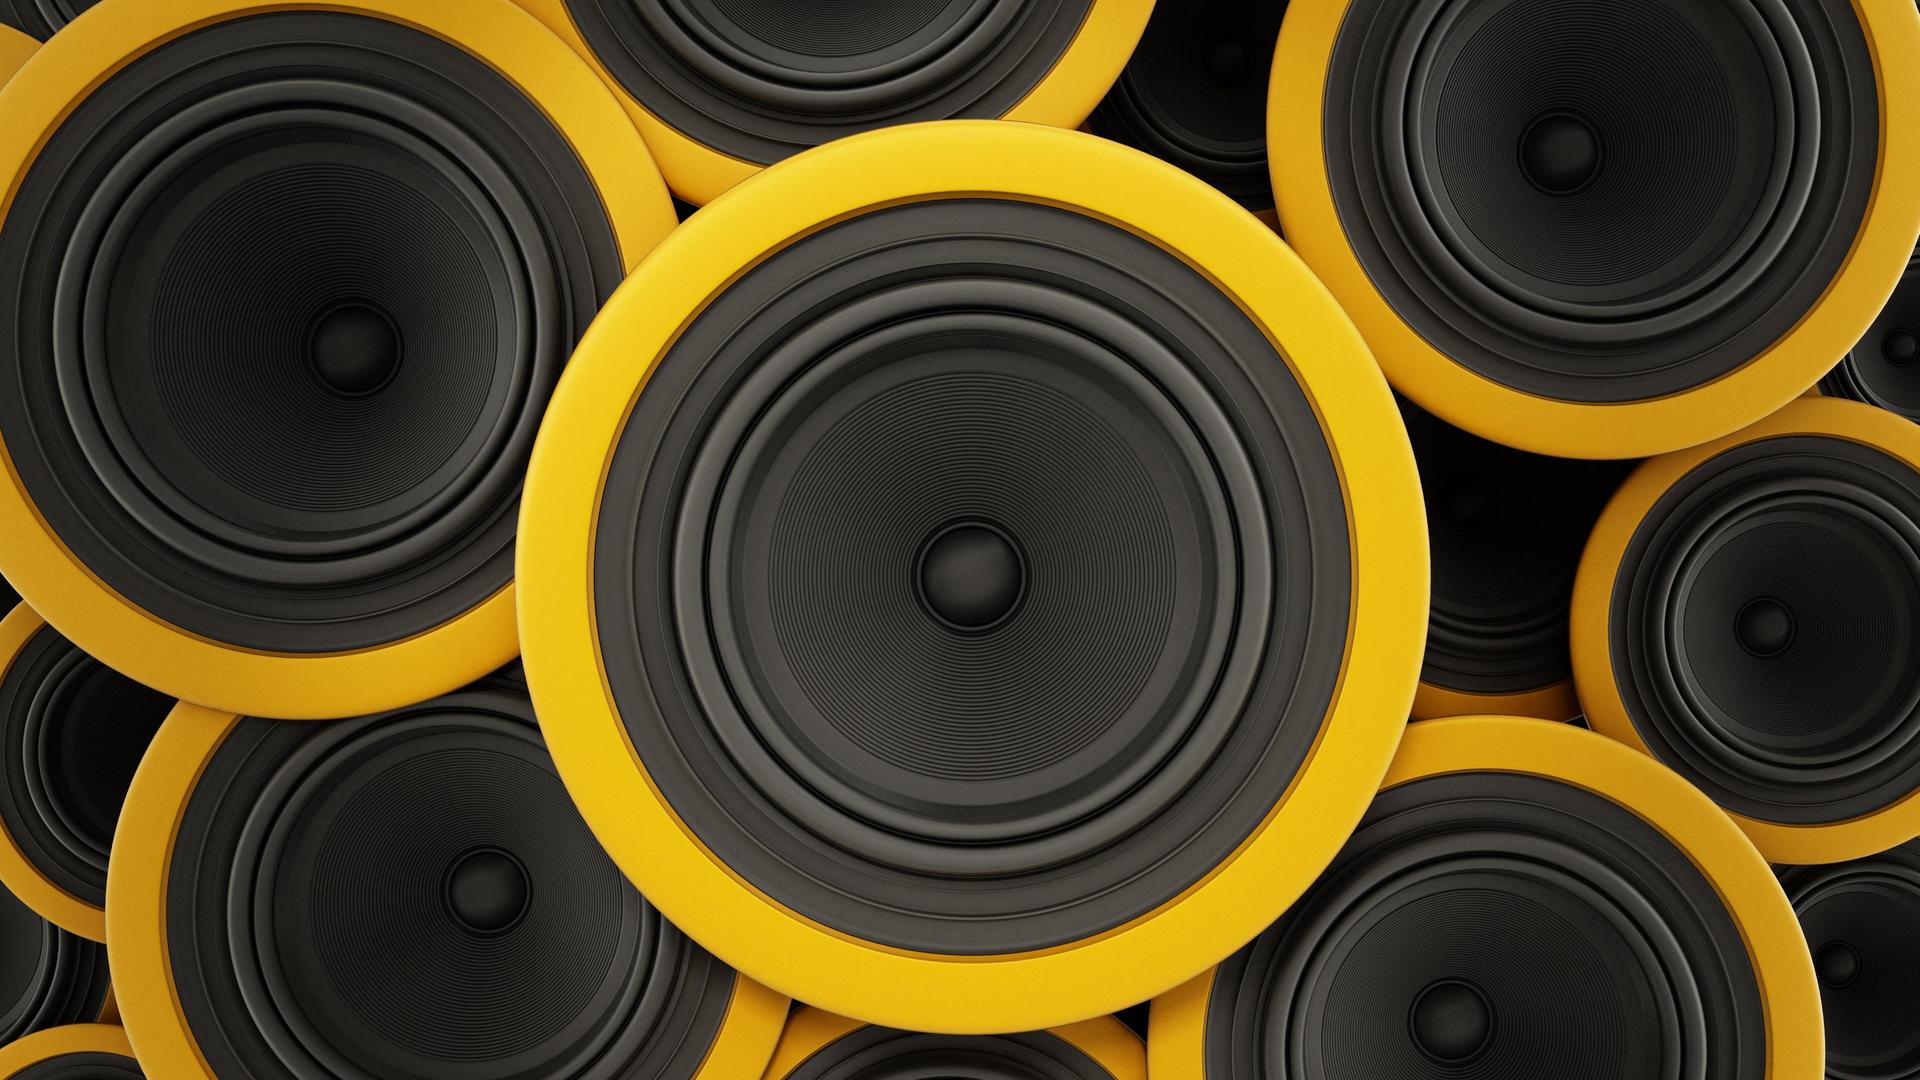 Gelb-schwarze Lautsprecher.